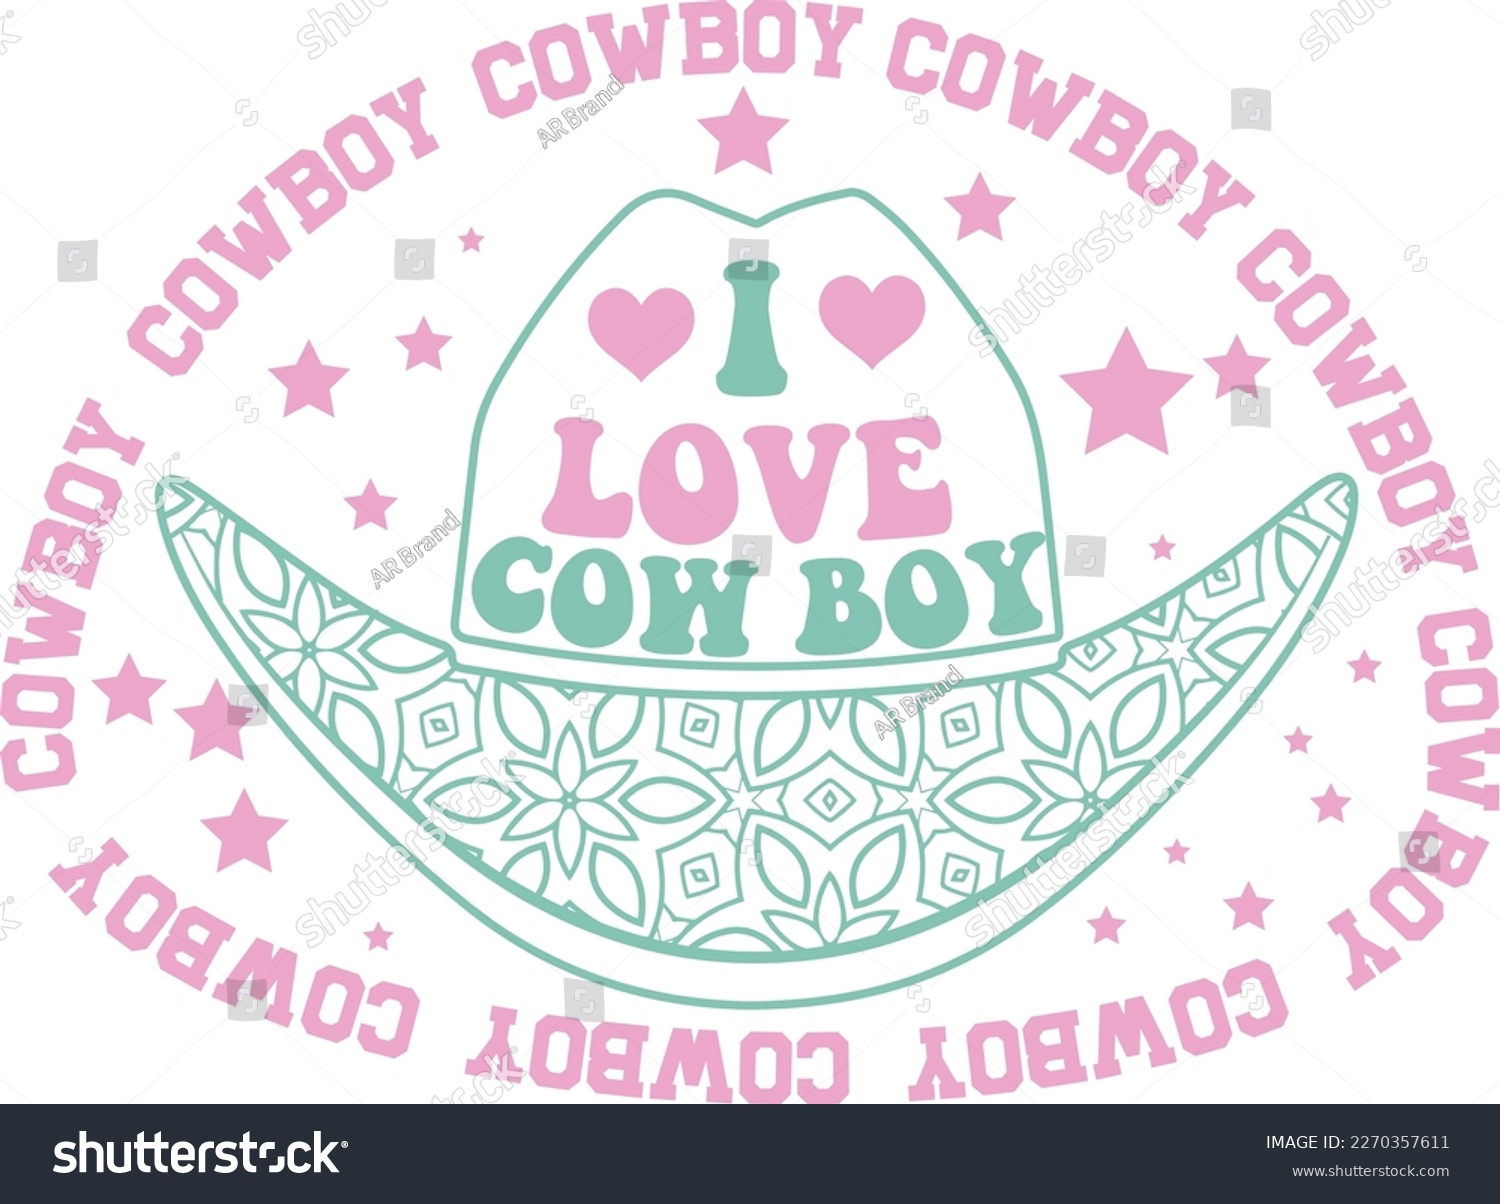 SVG of Western Cowboy Cowgirl SVG Vector Design  svg